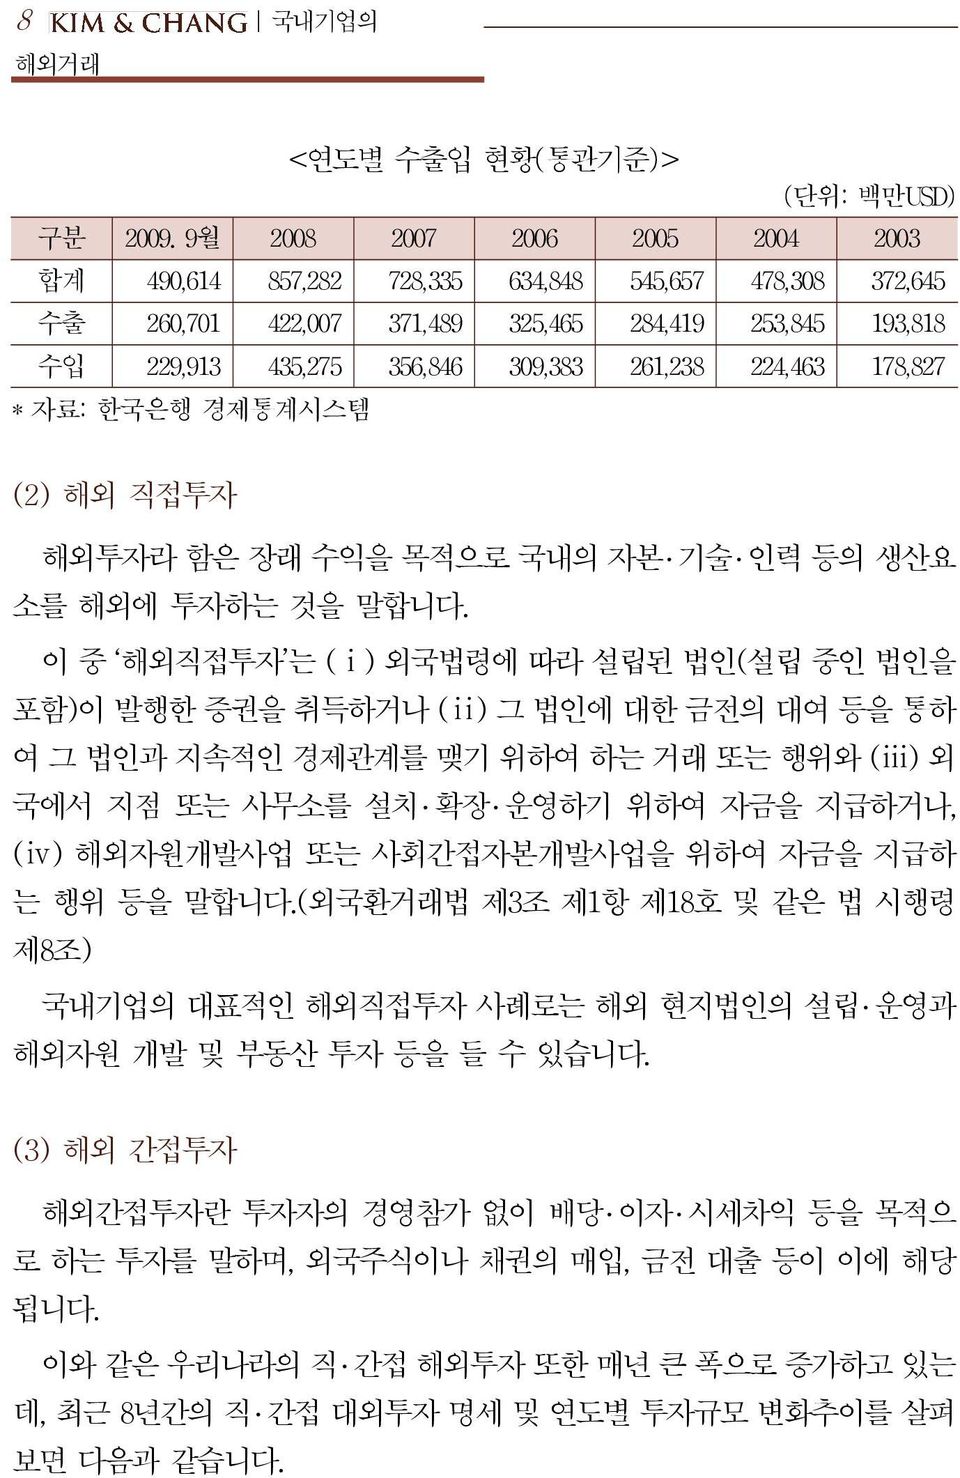 224,463 178,827 * 자료: 한국은행 경제통계시스템 (2) 해외 직접투자 해외투자라 함은 장래 수익을 목적으로 국내의 자본 기술 인력 등의 생산요 소를 해외에 투자하는 것을 말합니다.